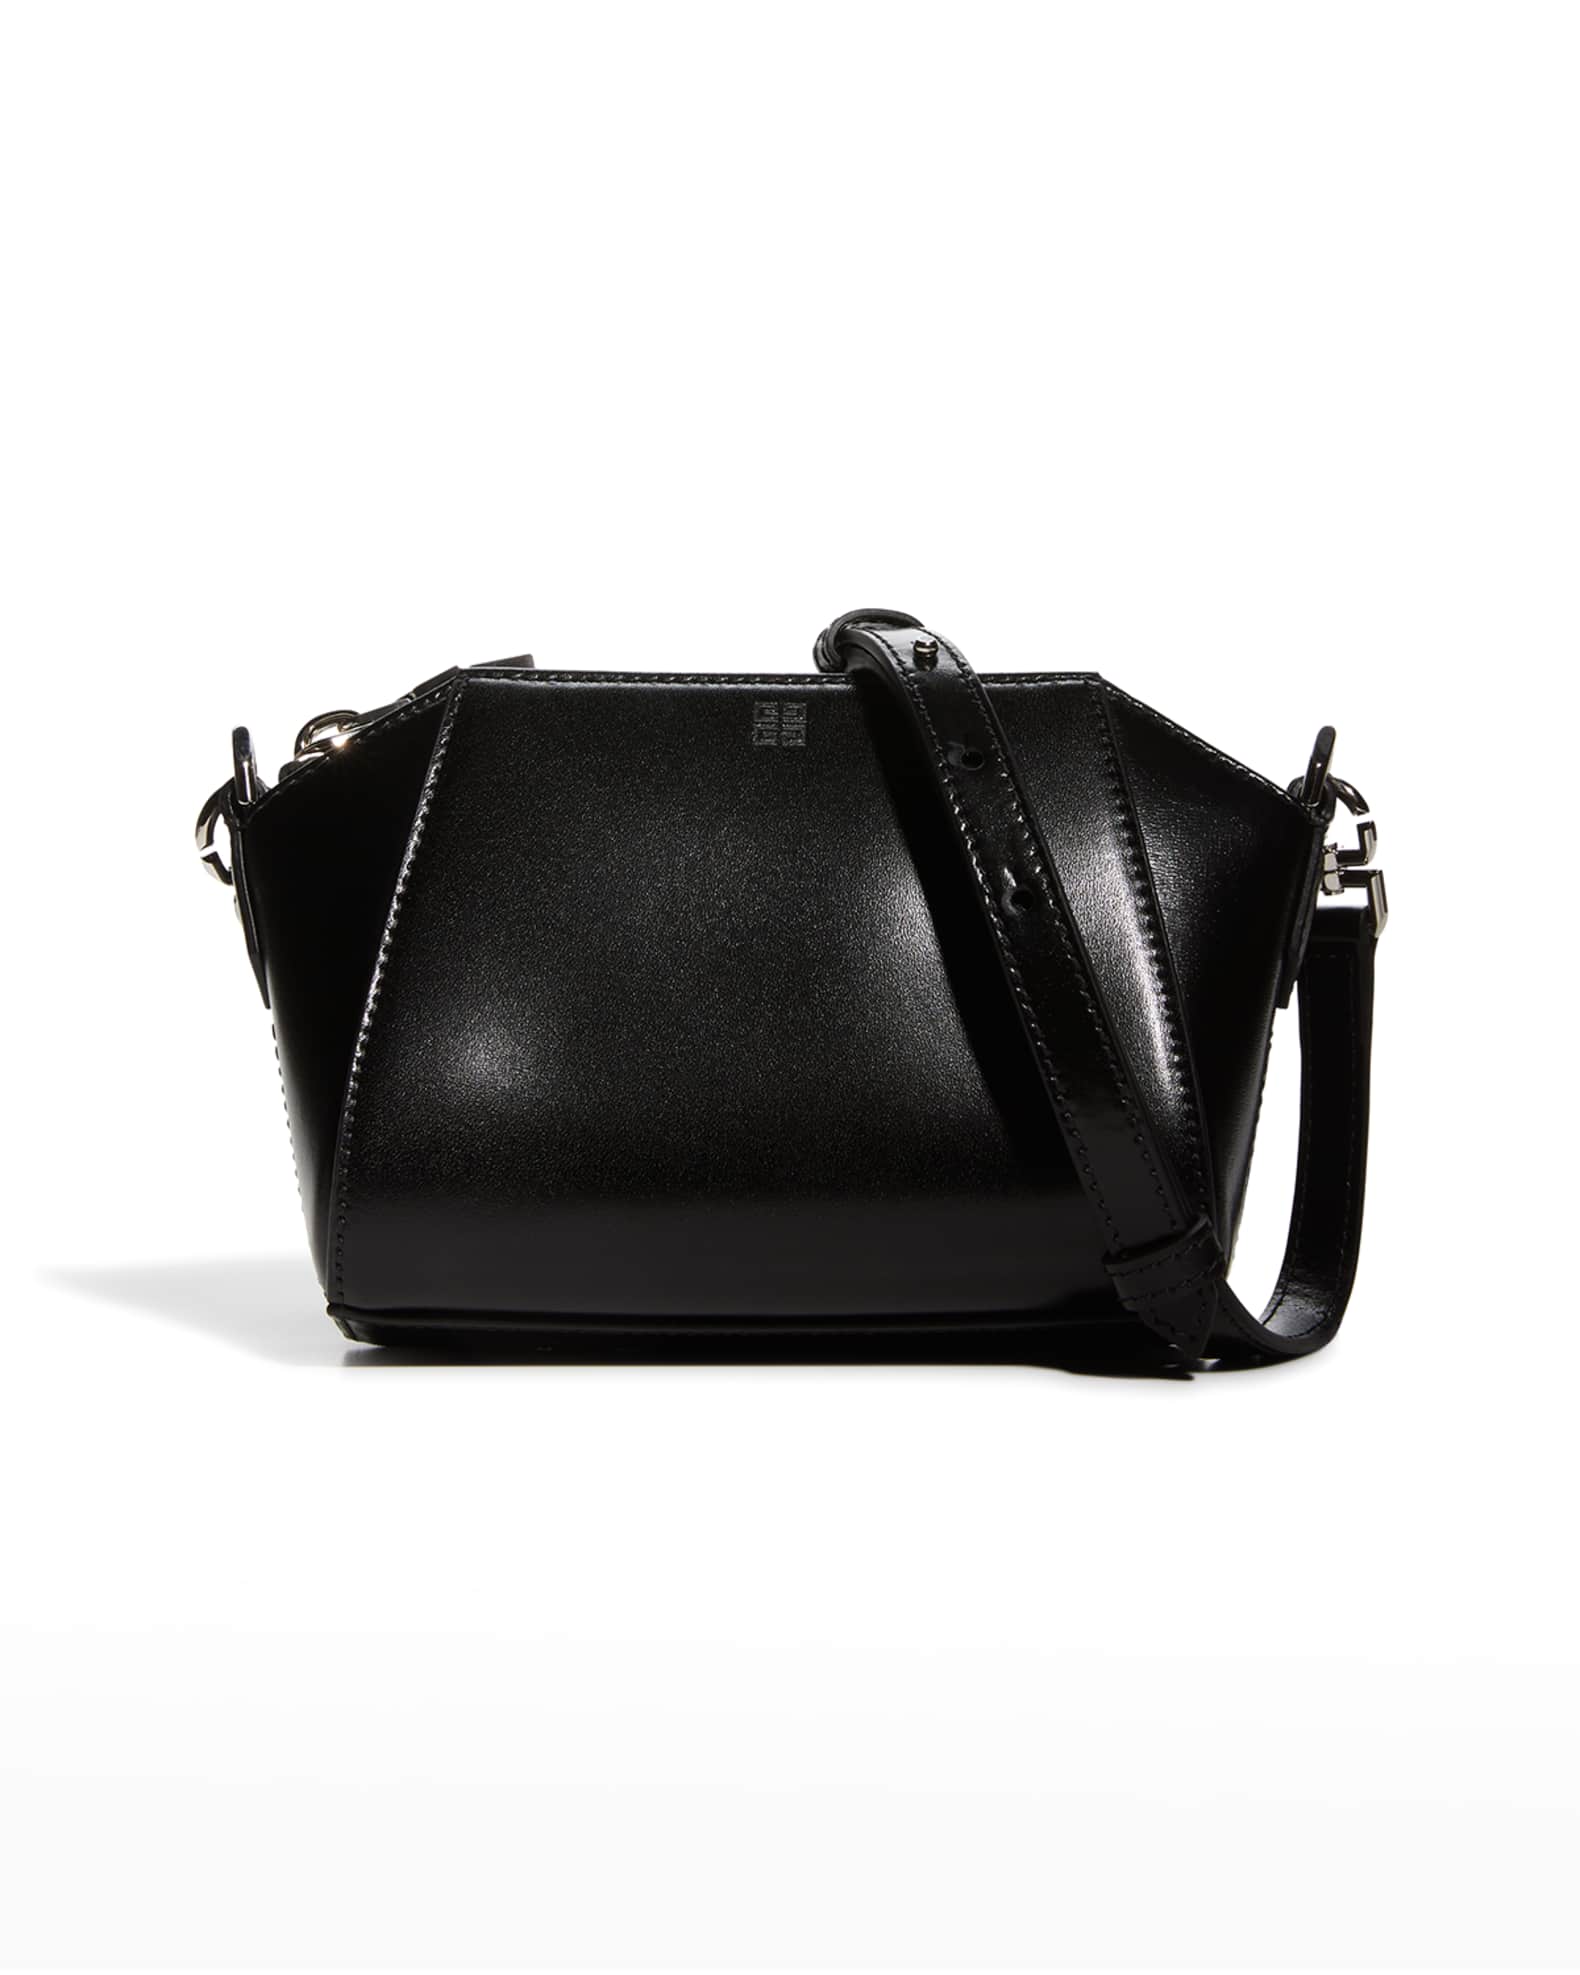 Givenchy Antigona Nano Crossbody Bag in Calf Leather | Neiman Marcus